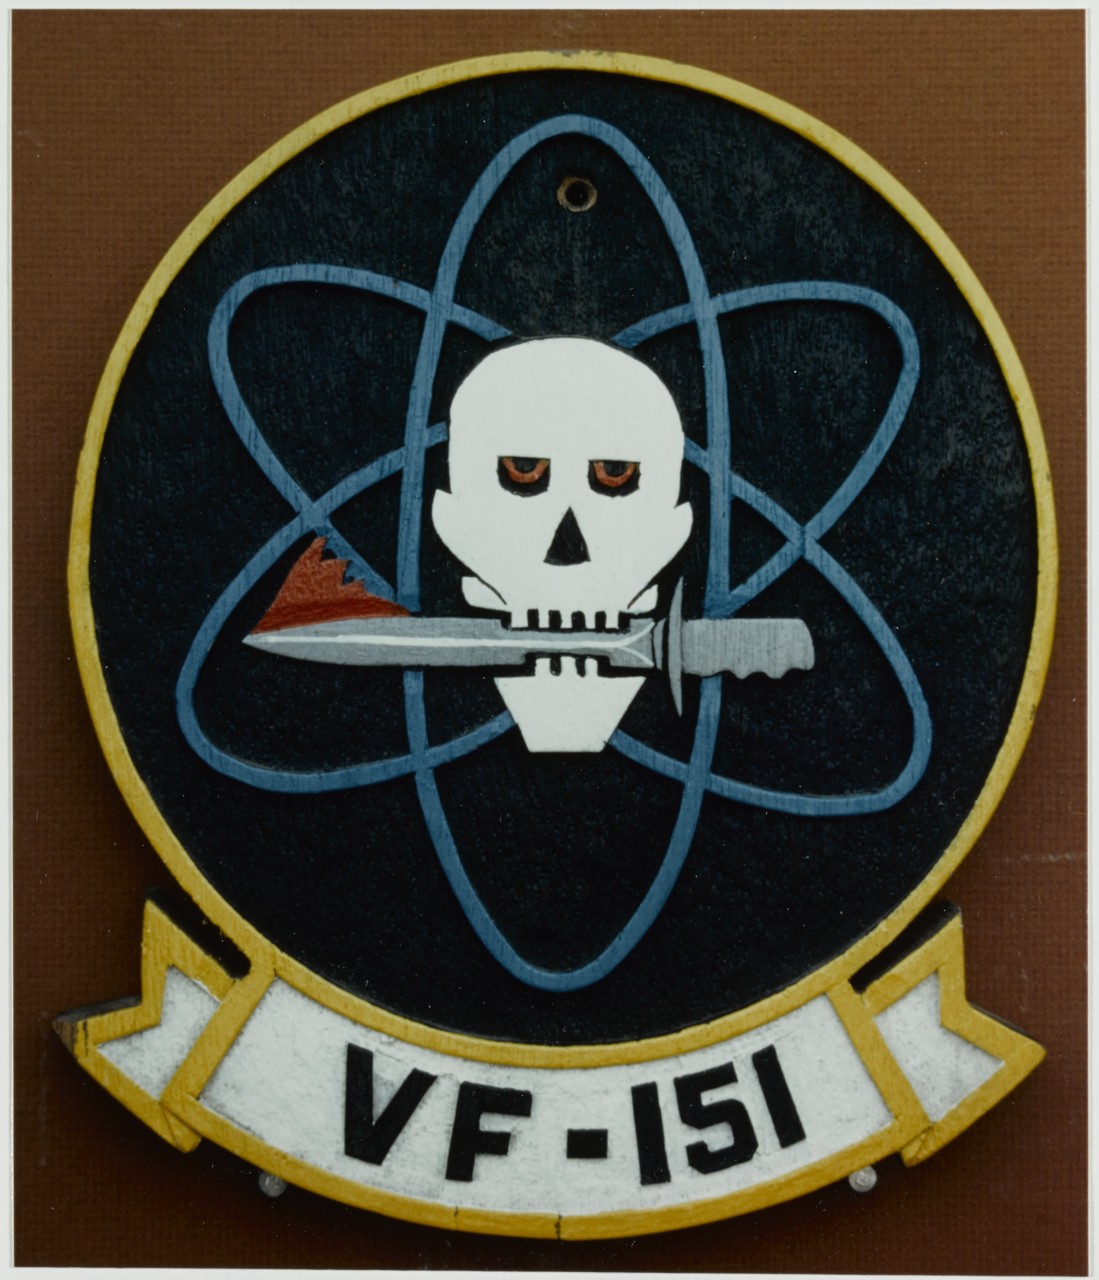 Insignia: Fighter Squadron 151 (VF-151)